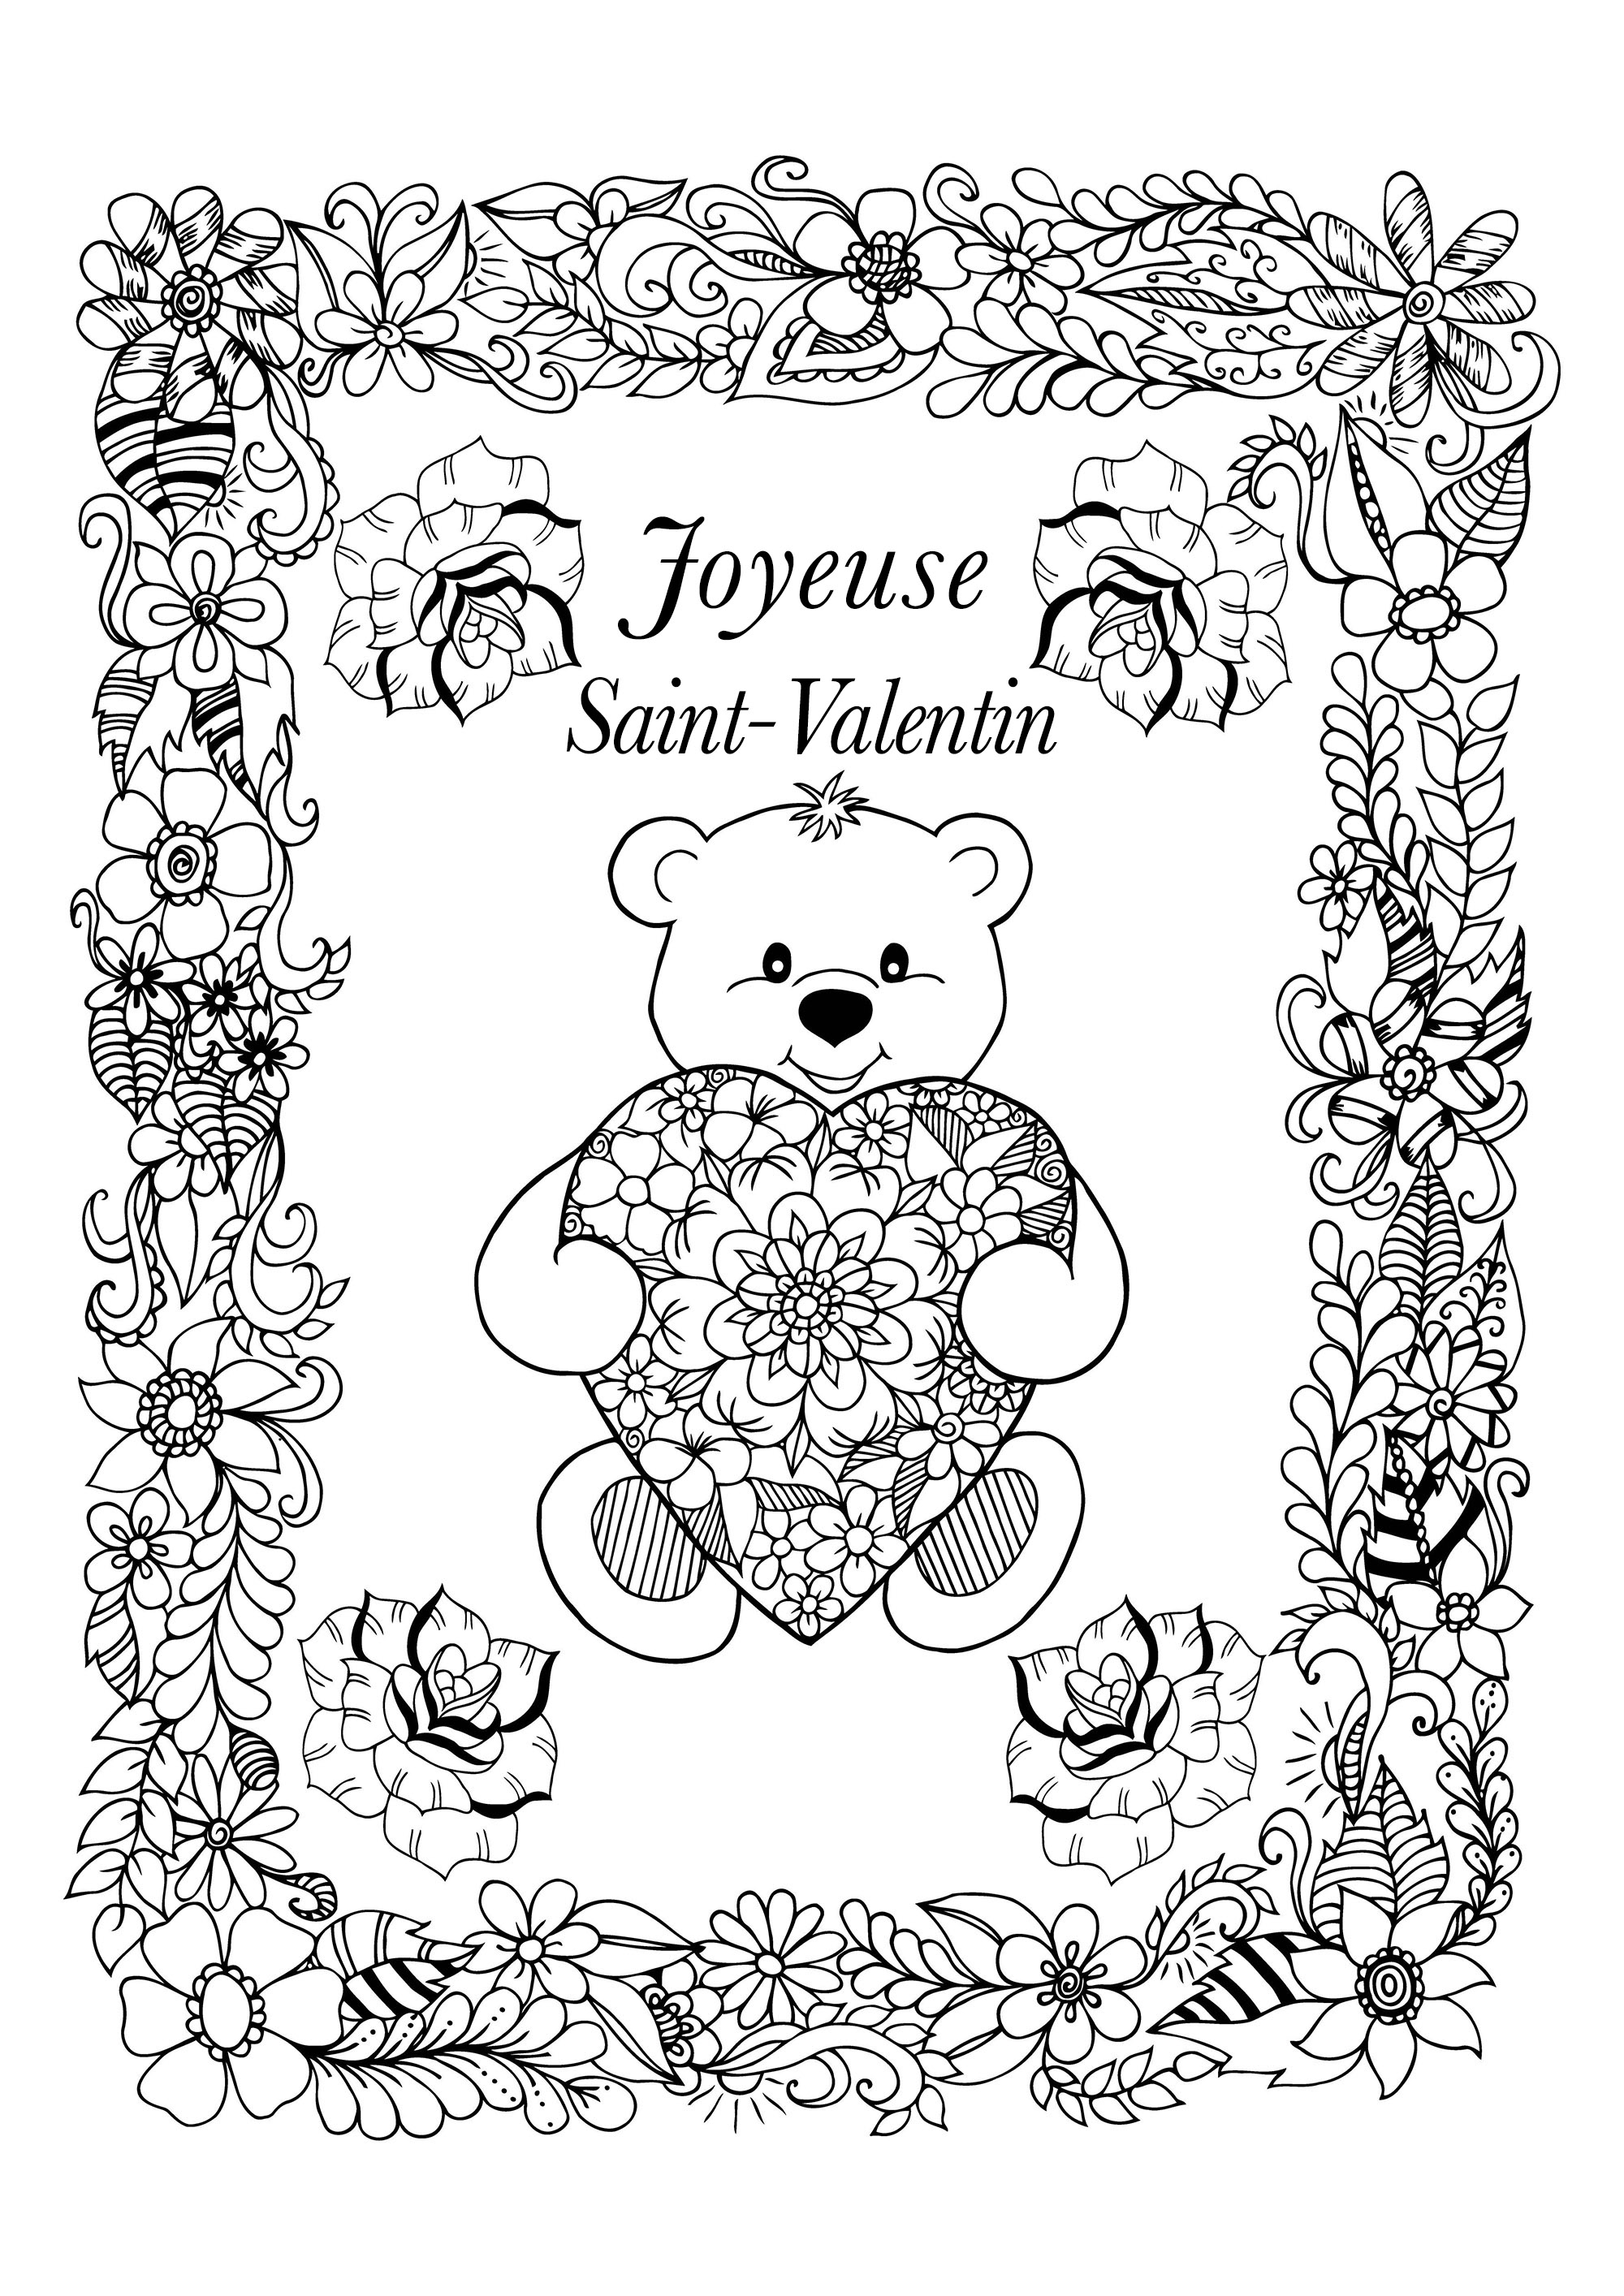 Jolie carte de Saint Valentin à colorier, avec un ours mignon portant un coeur à jolis motifs, et un joli encadrement plein de fleurs, Artiste : Maritel67   Source : 123rf